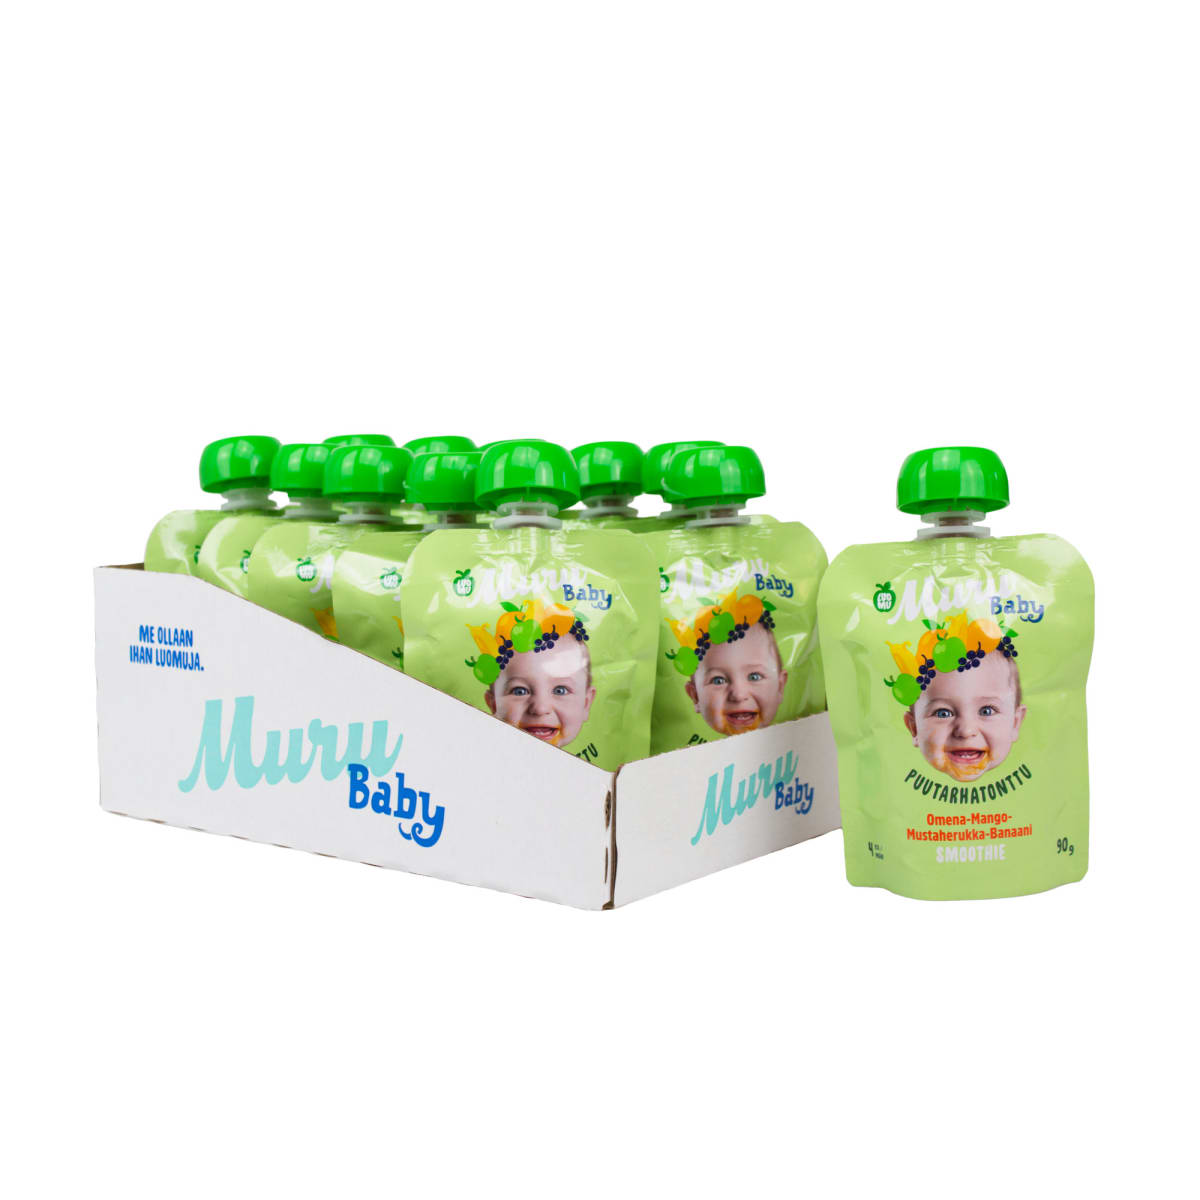 Muru Baby Puutarhatonttu Omena-Mango Mustaherukka-Banaani 4kk 12x90g  smoothie  verkkokauppa